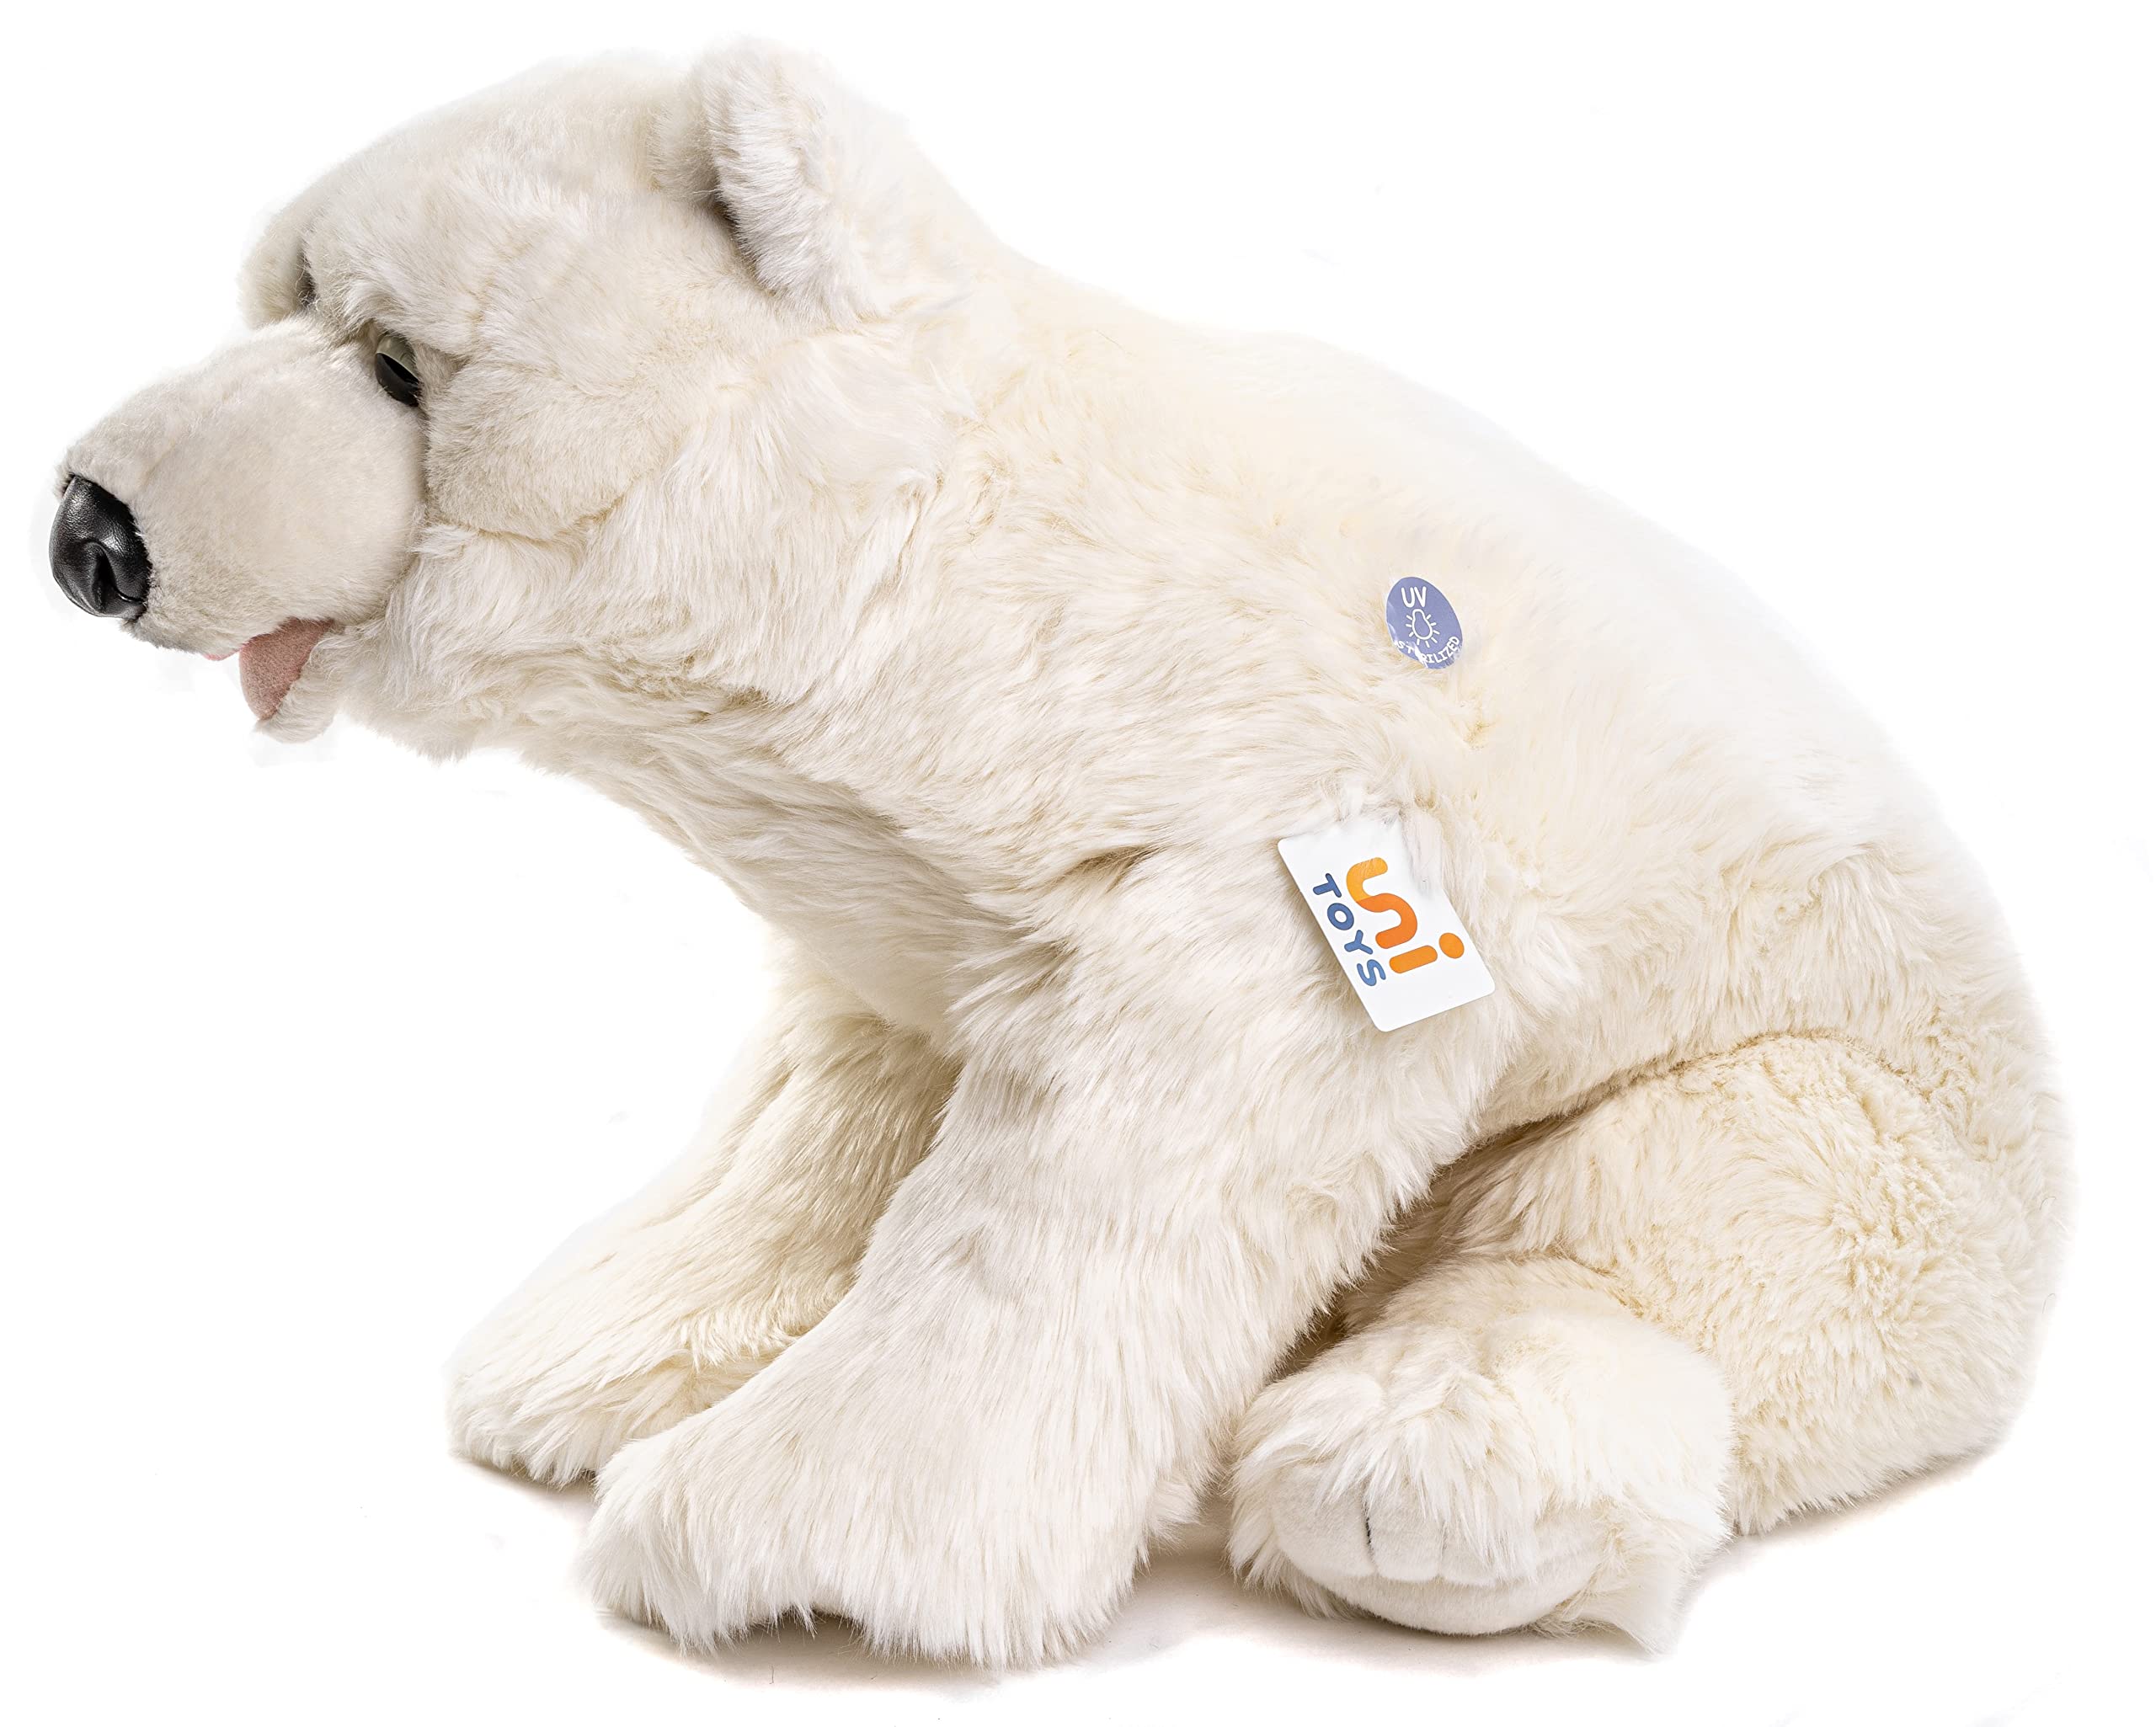 Uni-Toys - Großer Eisbär, liegend - 61 cm (Länge) - Plüsch-Bär, Polarbär - Plüschtier, Kuscheltier